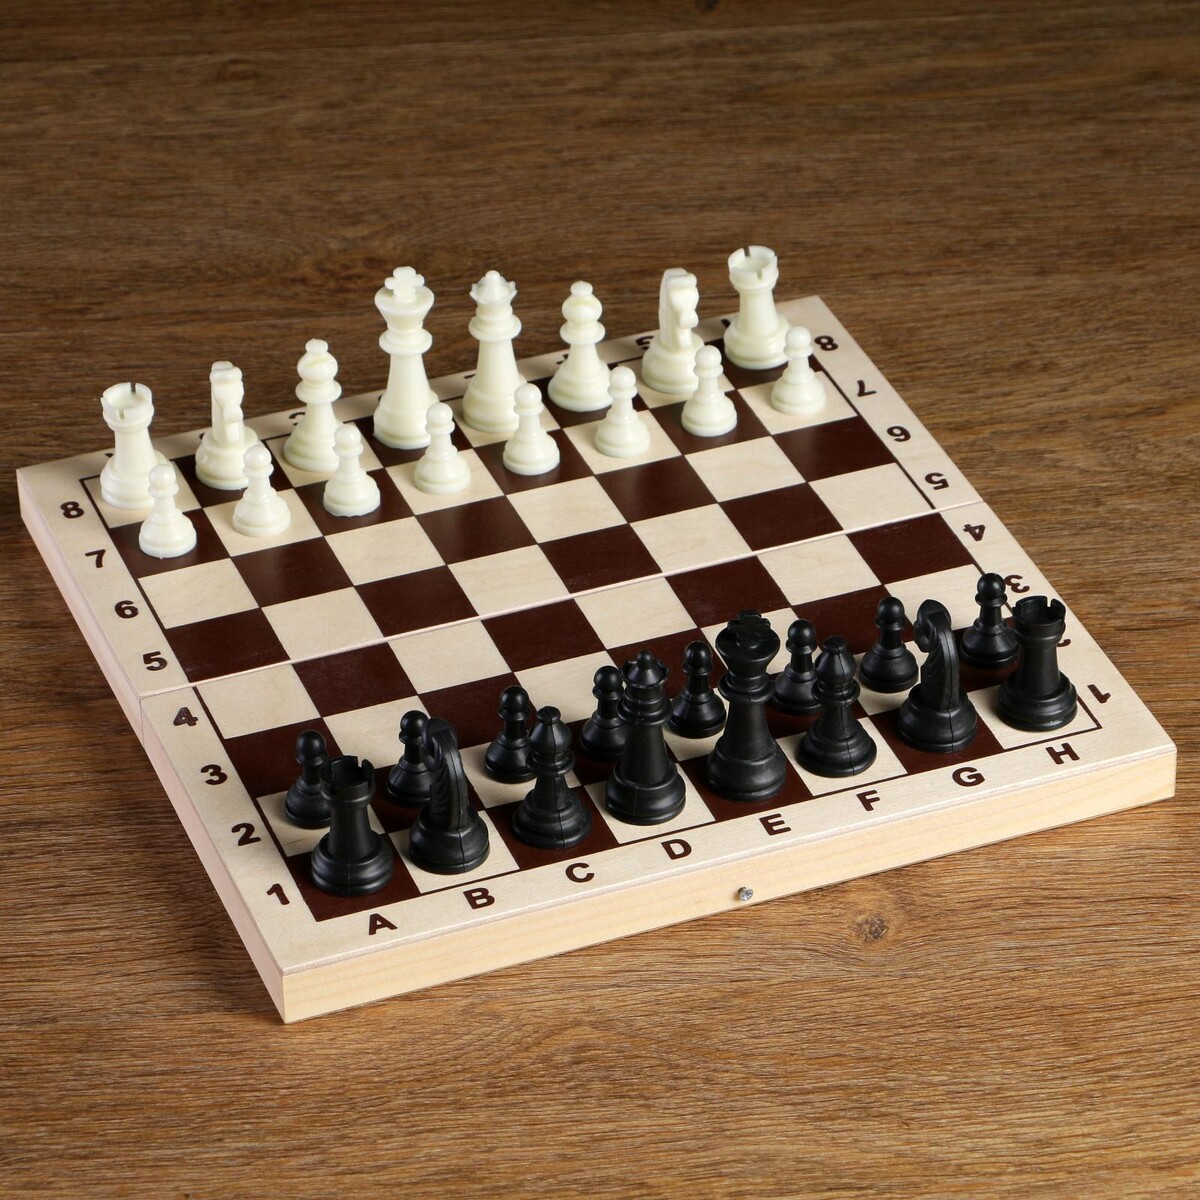 Шахматные фигуры, пластик, король h-6.2 см, пешка h-3 см король сусликов